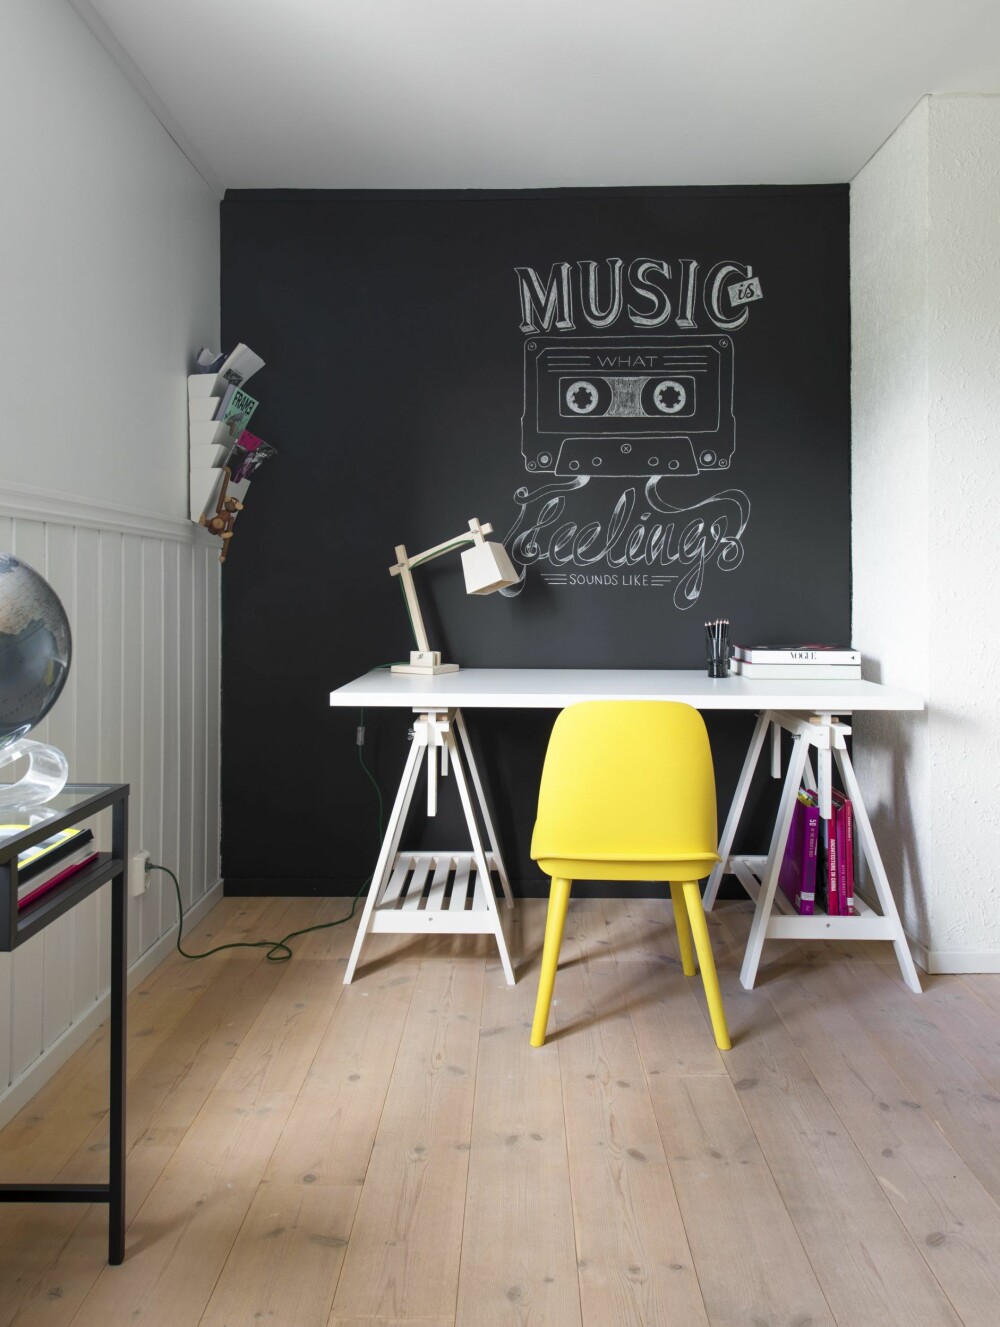 Musikalsk skrivekrok. Endeveggen ble malt med tavlemaling og fikk musikk-inspirert krittmotiv.
Skrivebordet er fra Ikea, magasin-hyllen likeså. Den gule stolen og trelampen på bordet er begge fra Muuto.